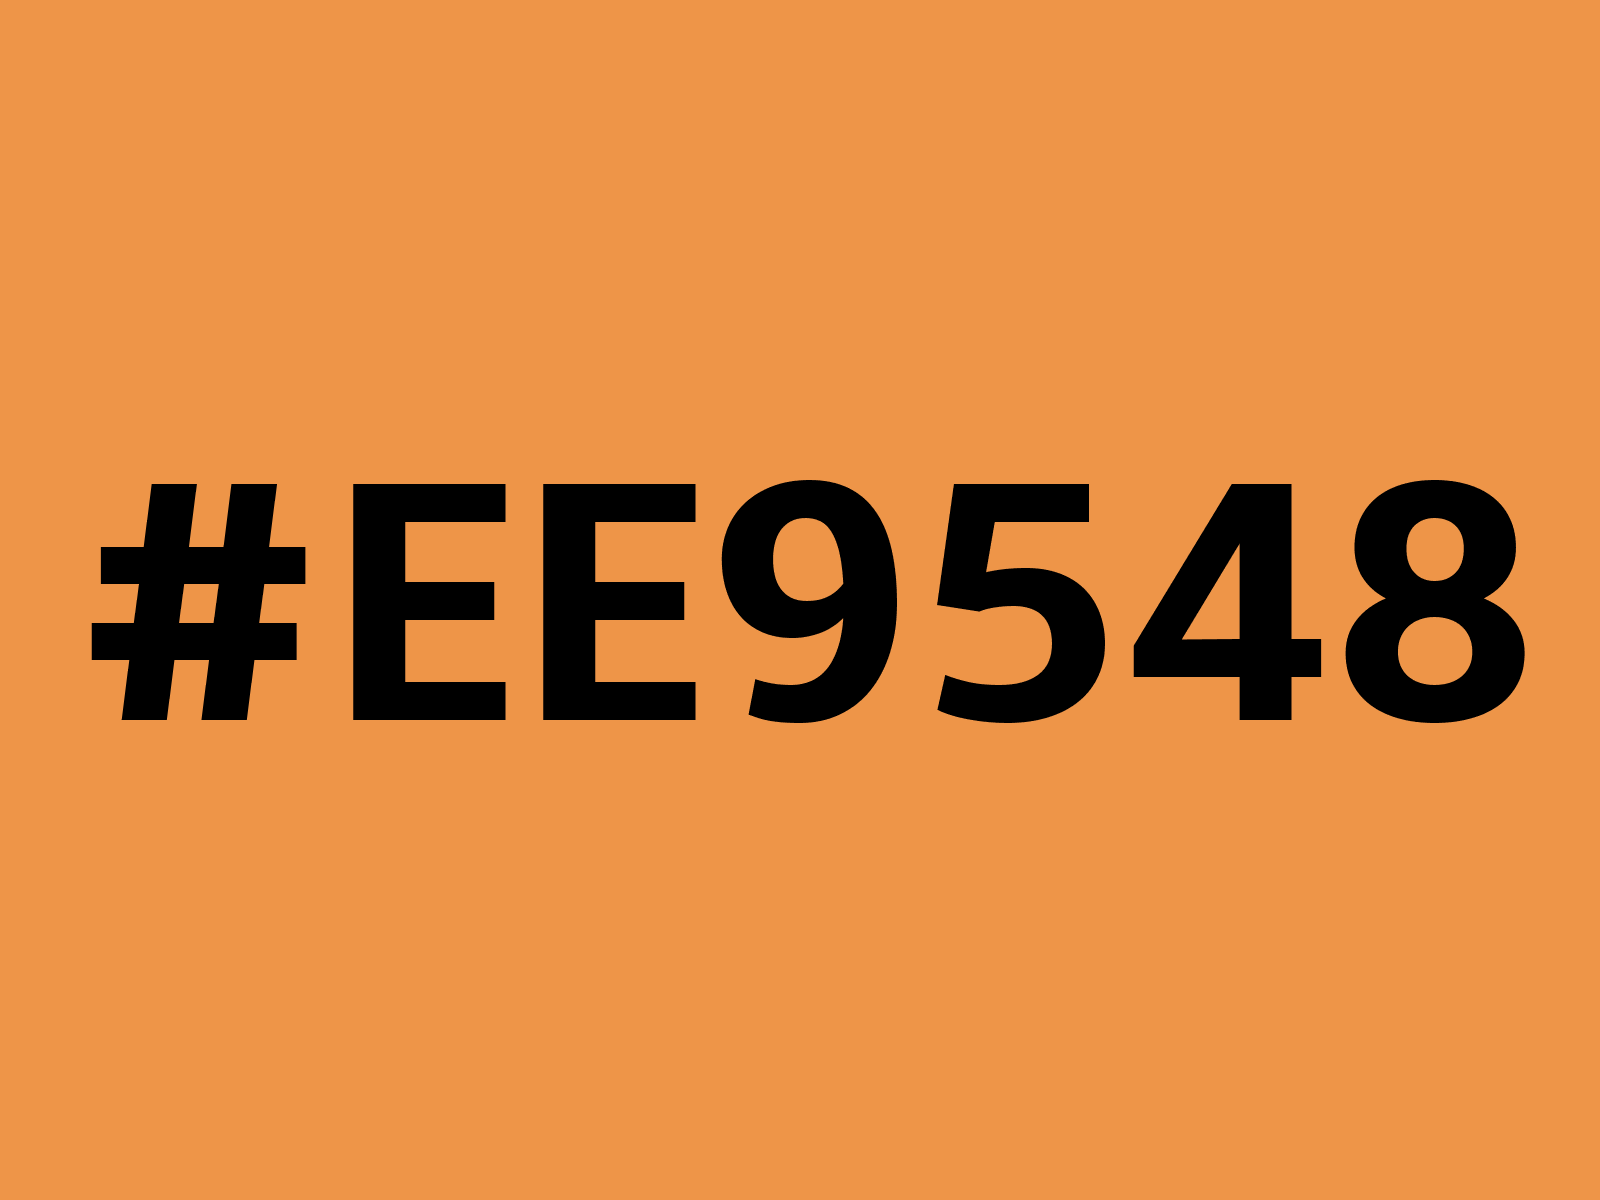 ee9548